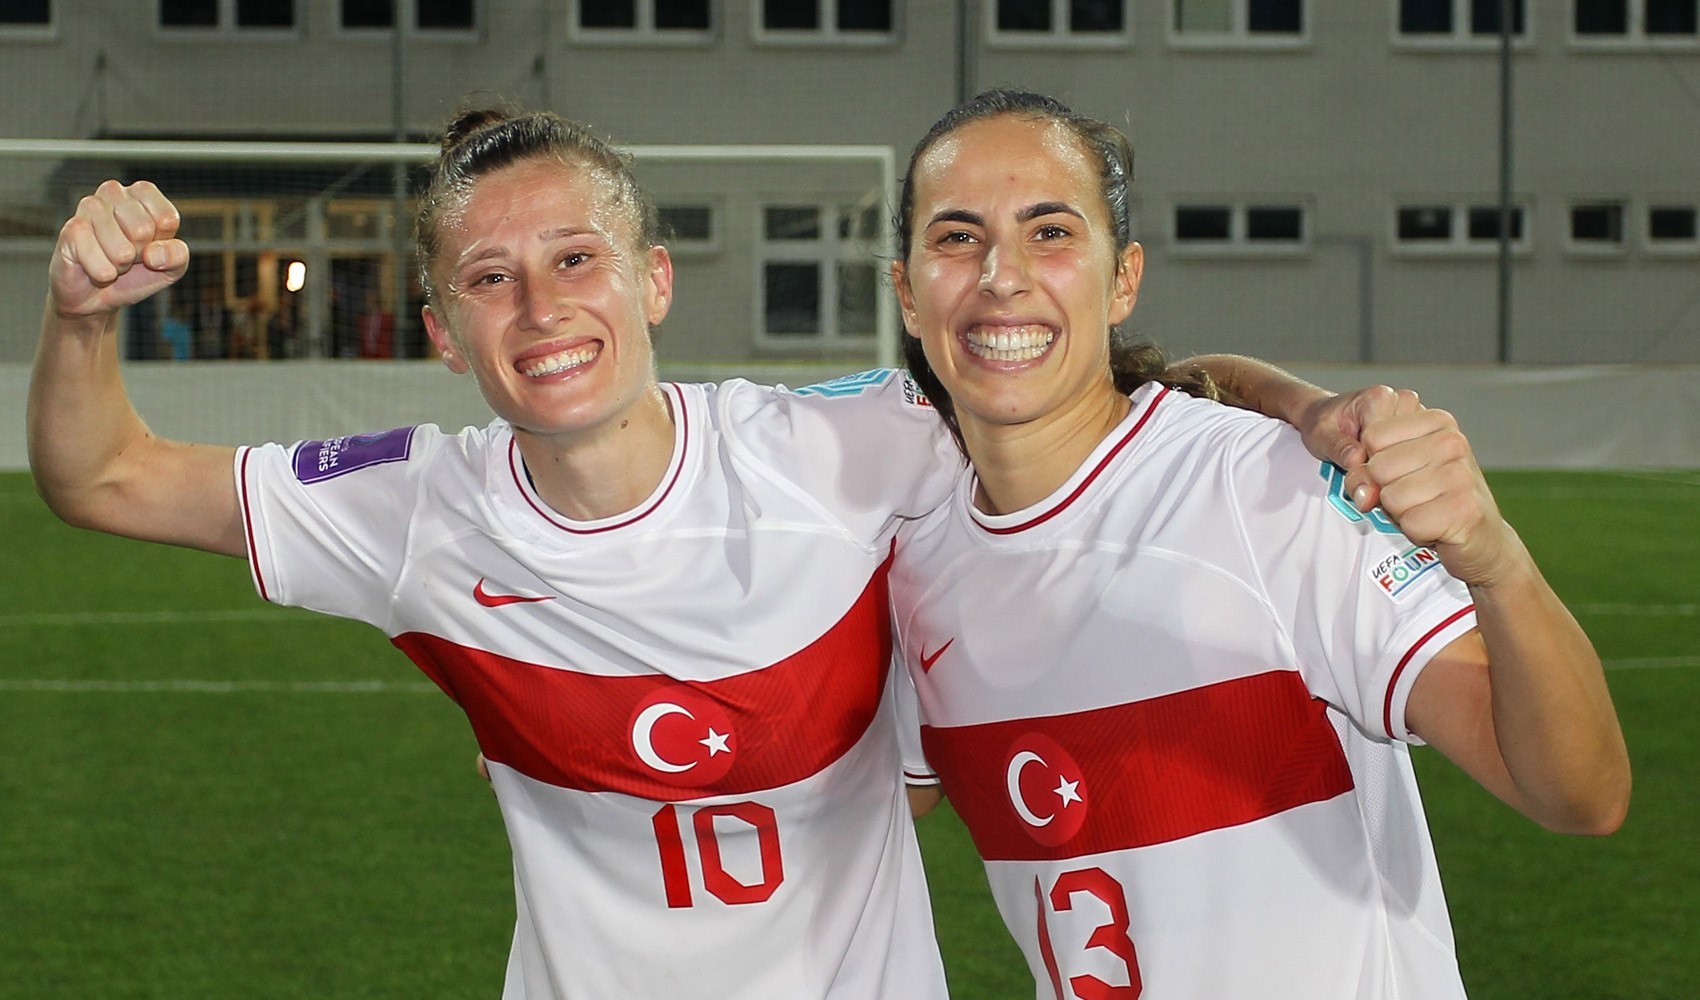 A Milli Kadın Futbol Takımı, EURO 2025 Play-Off'u garantiledi